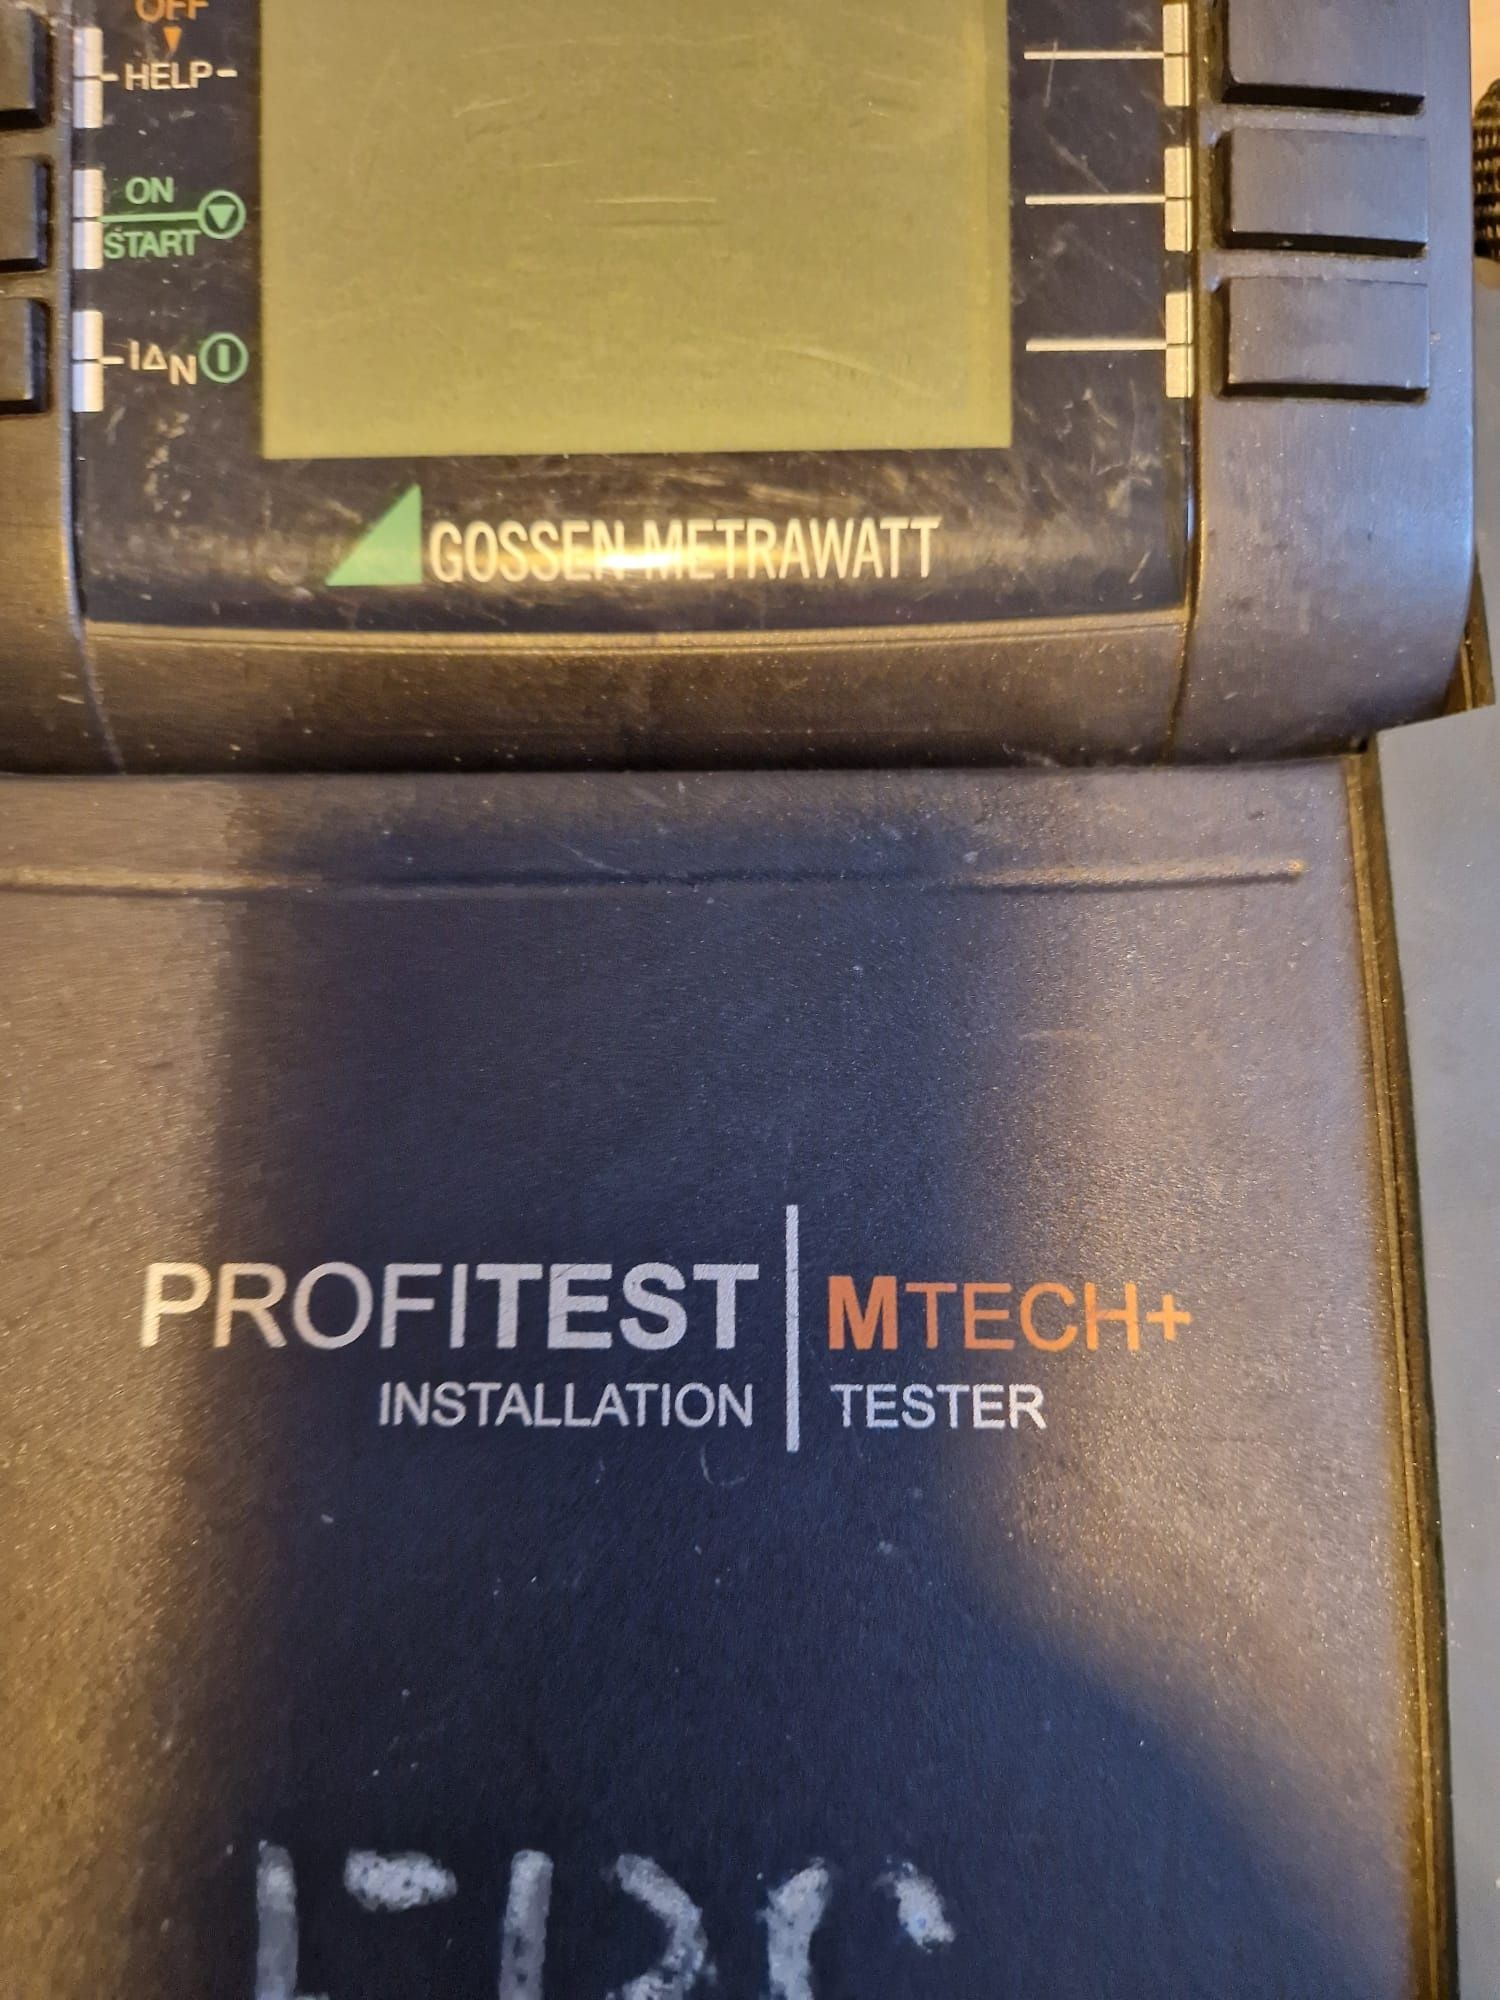 Tester miernik instalacji gossen metrawatt Profitest mtech+ jak Sonel